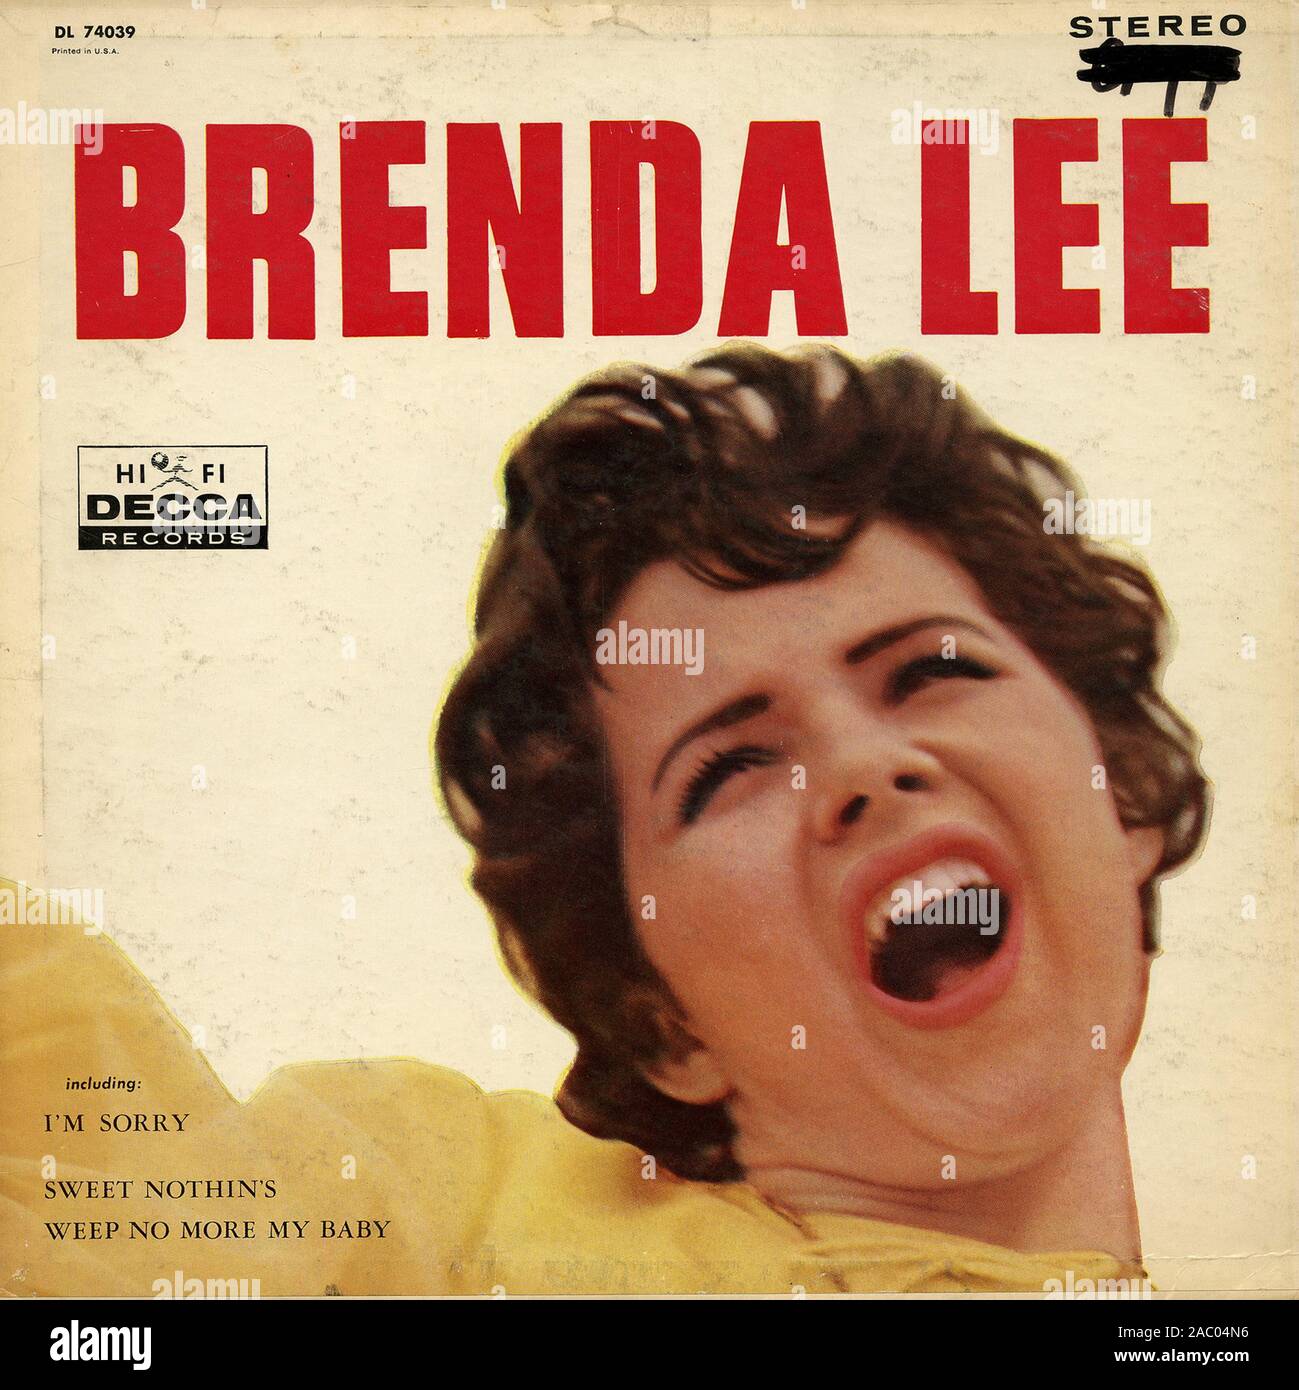 Brenda Lee - Vintage Vinyl Album Cover Stockfotografie - Alamy